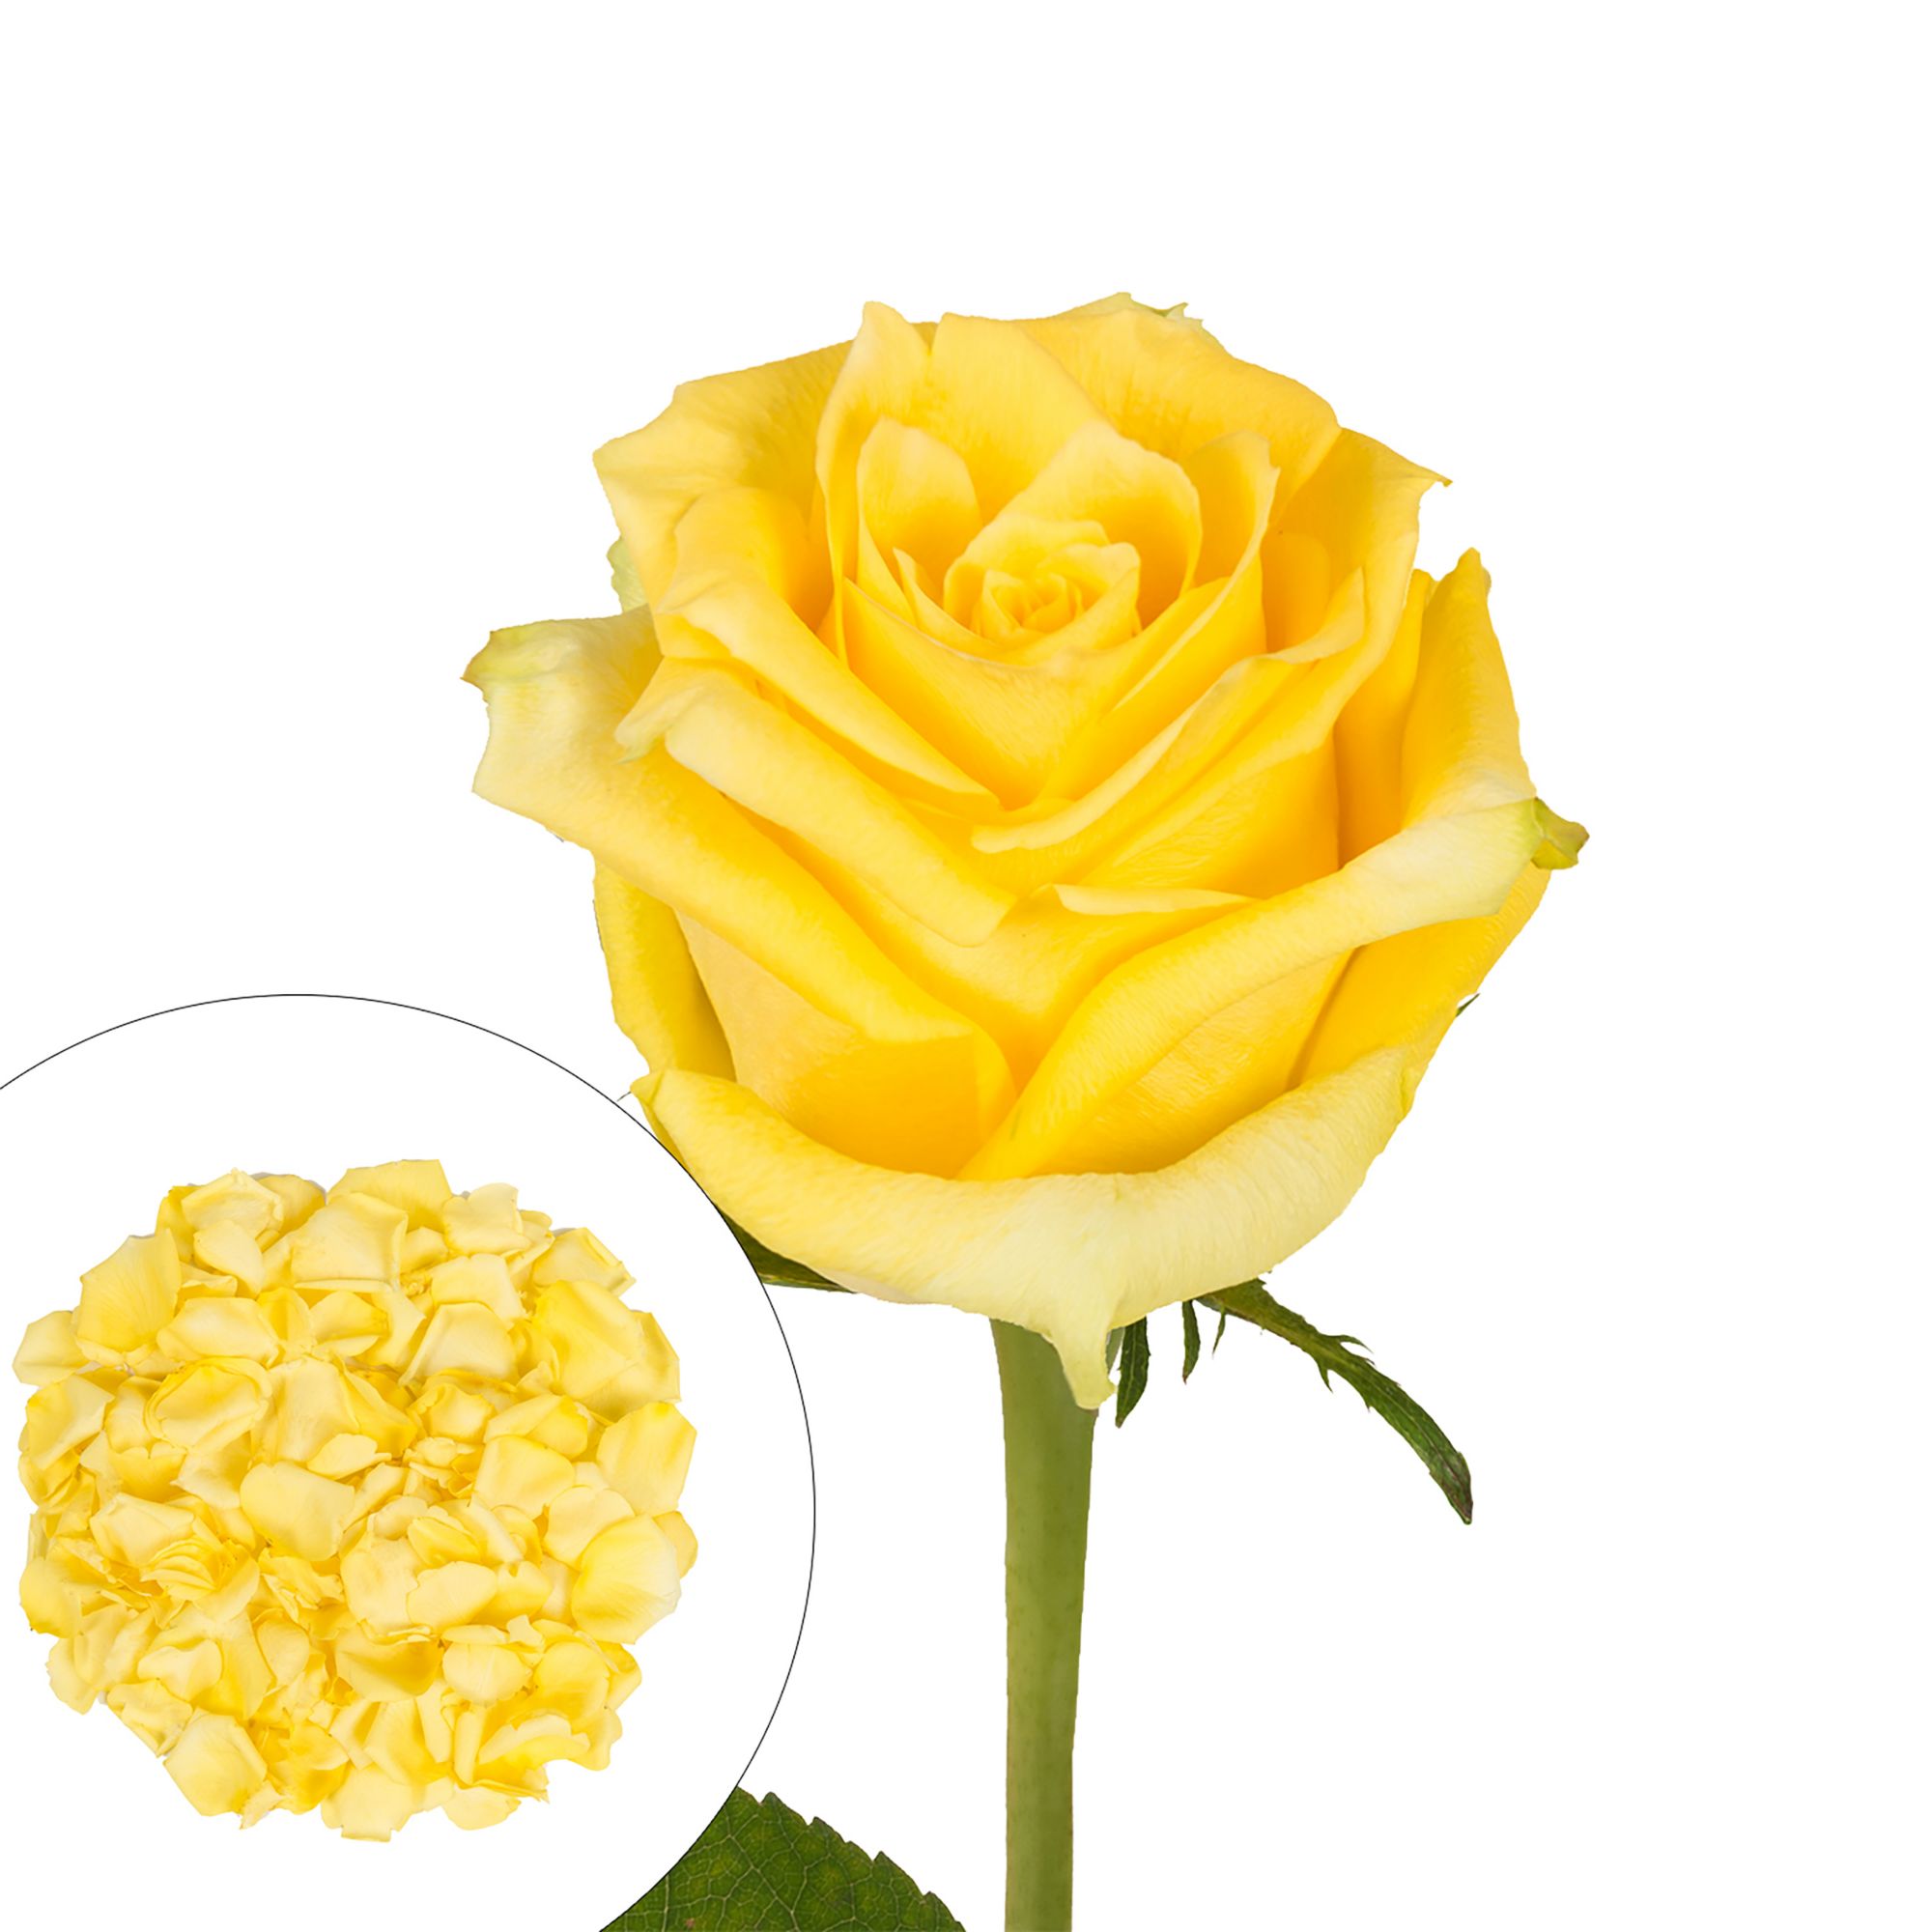 Roses and Petals Combo Box, 75/2,000 pk. - Yellow